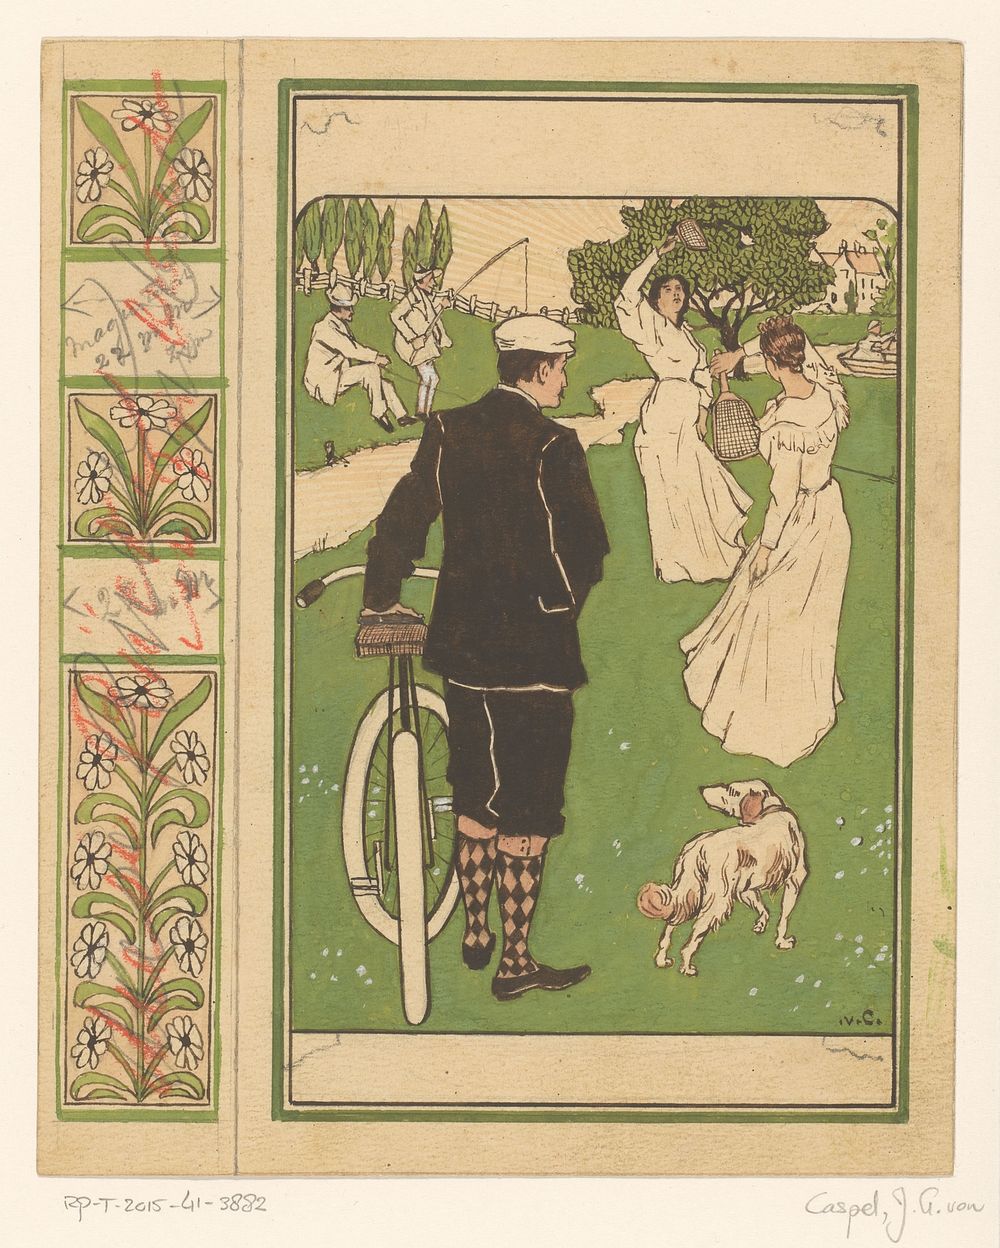 Bandontwerp met man met fiets en badmintonspelers (1880 - 1928) by Johann Georg van Caspel